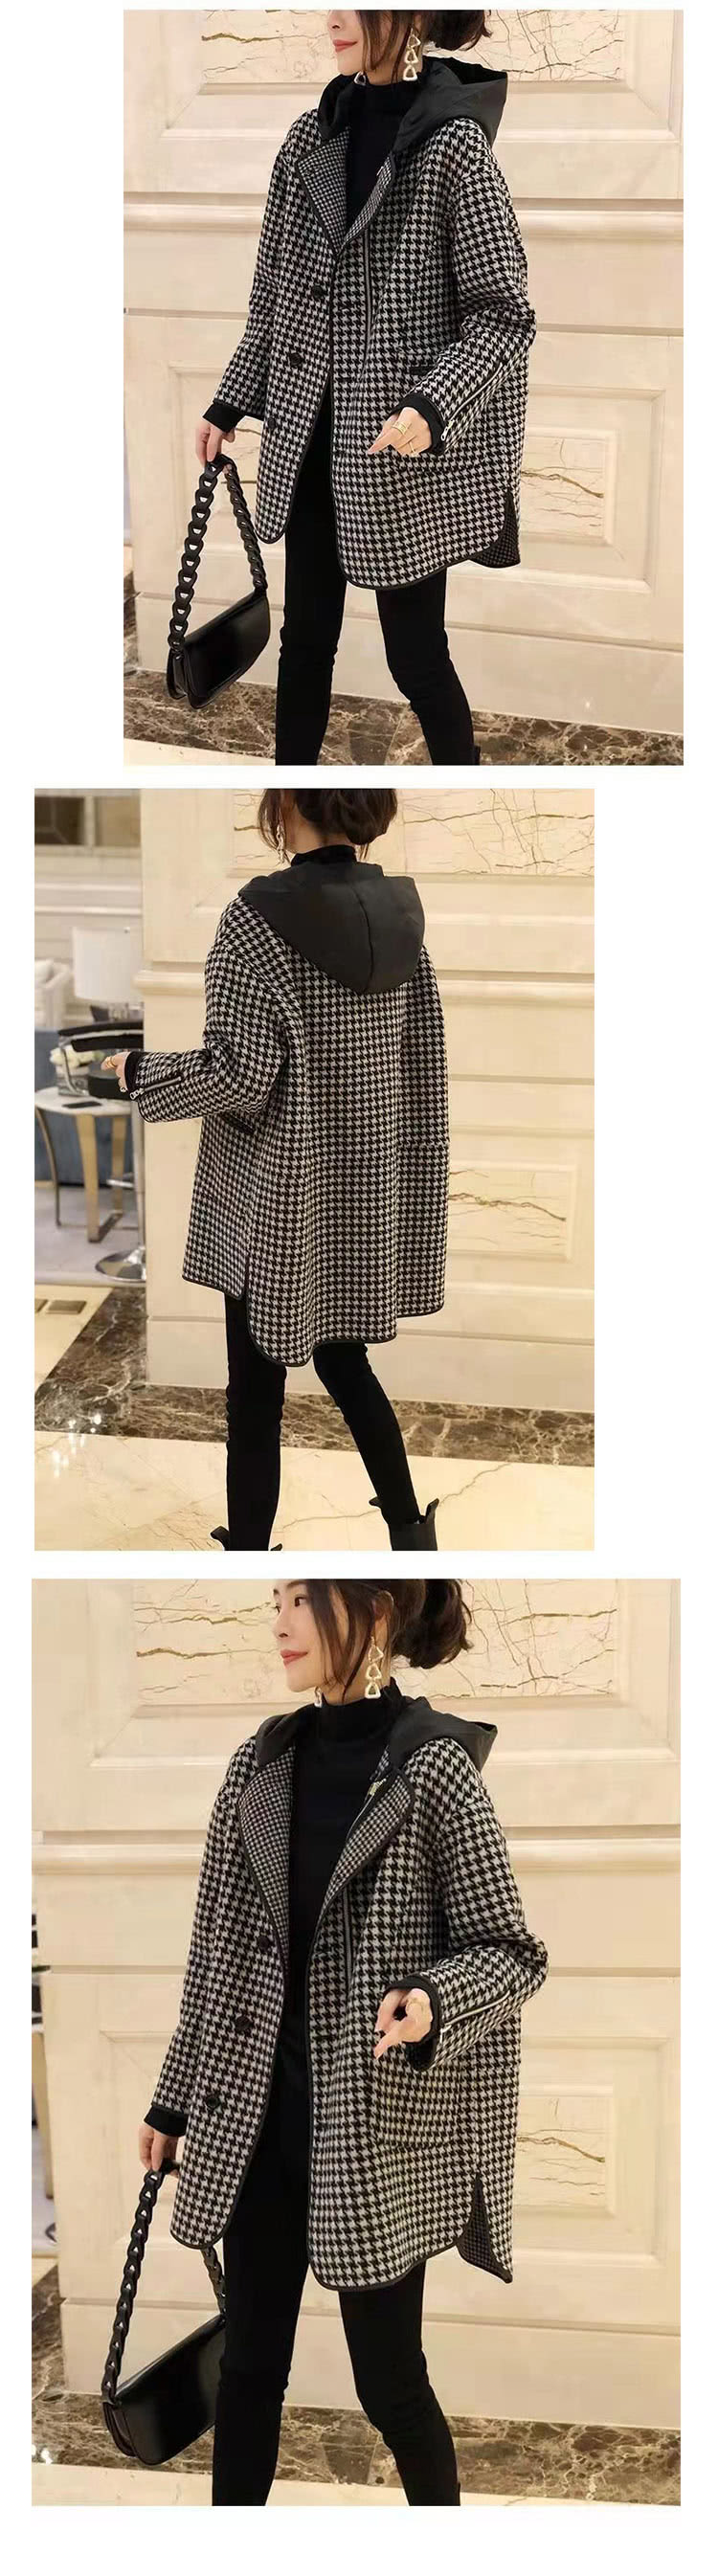 Amay Style 艾美時尚 秋新品 中大尺碼女裝 外套 